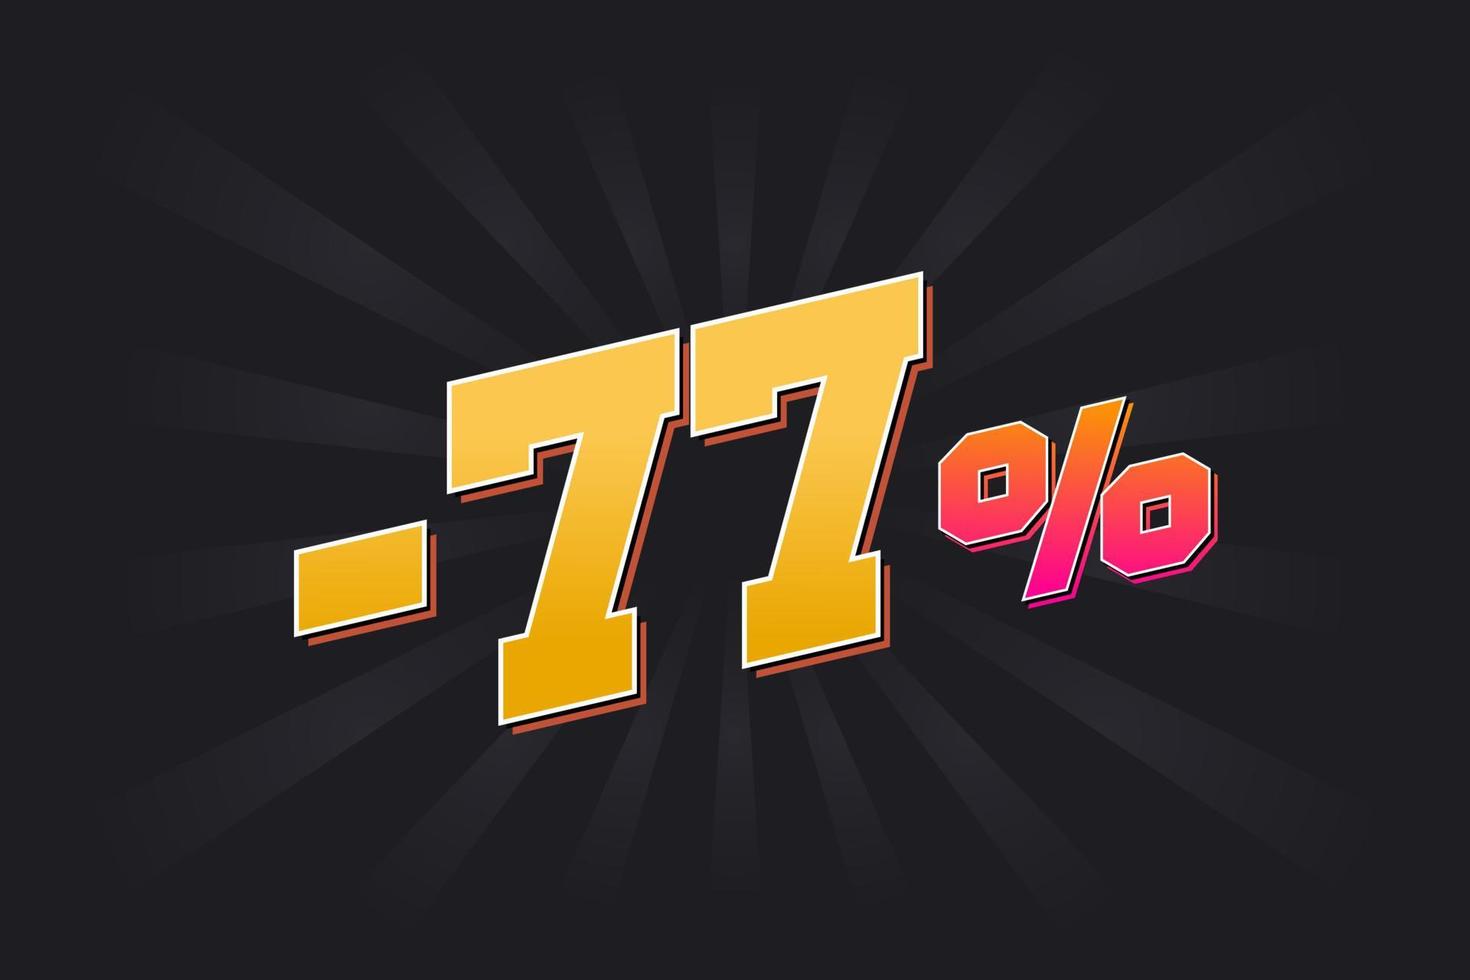 negatief 77 korting banier met donker achtergrond en geel tekst. -77 procent verkoop promotionele ontwerp. vector